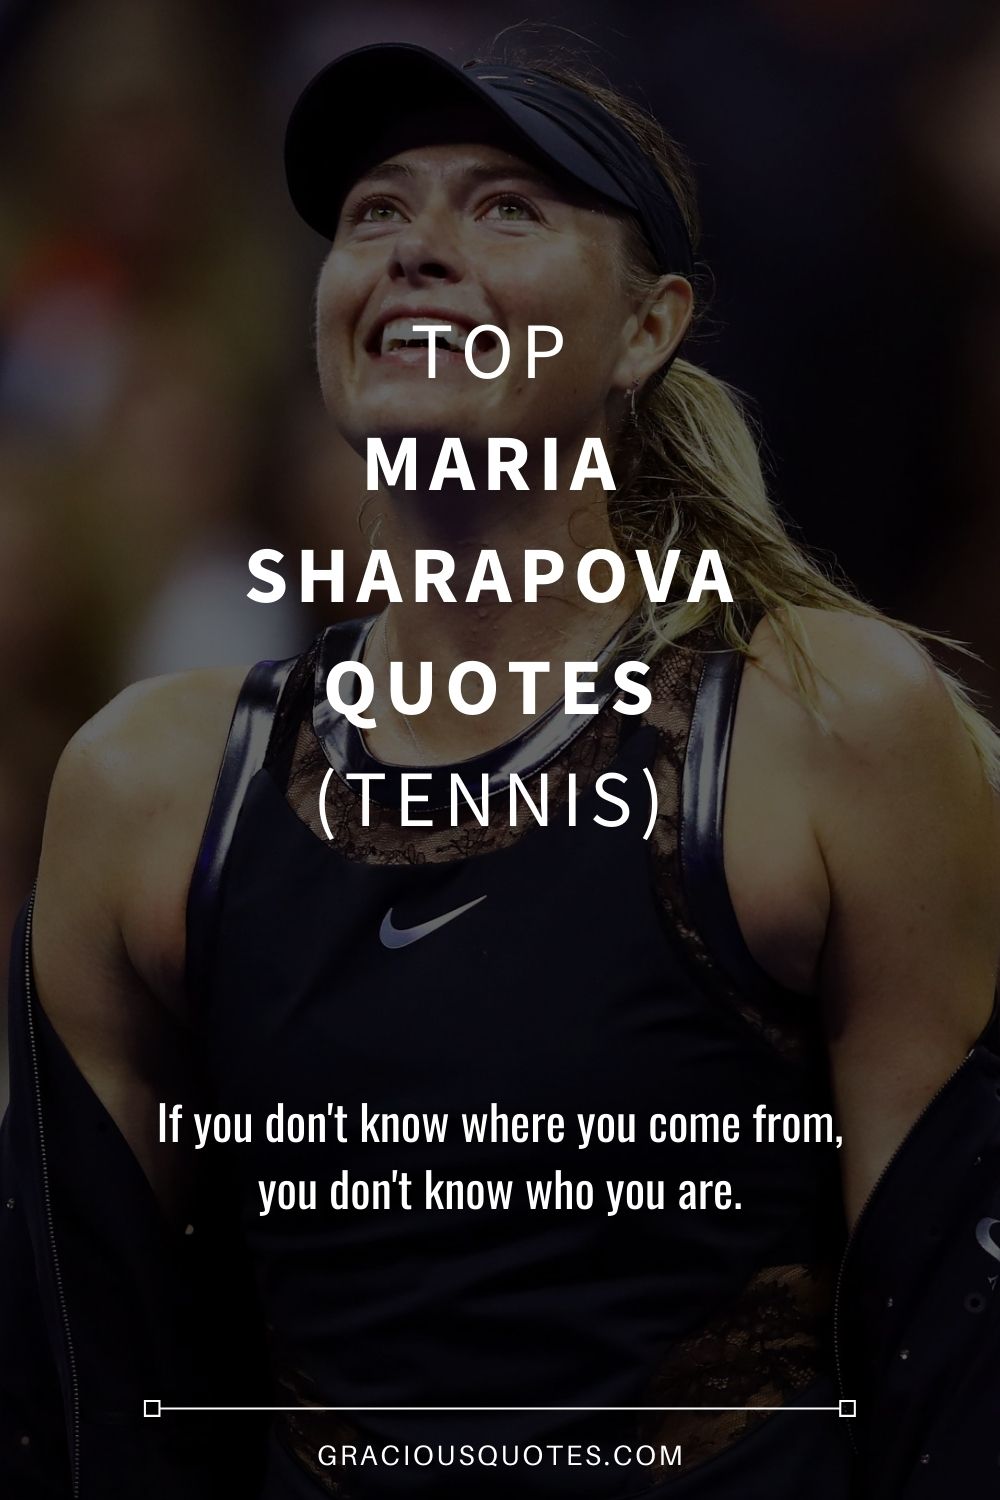 Top Maria Sharapova Quotes (TENNIS) - Gracious Quotes